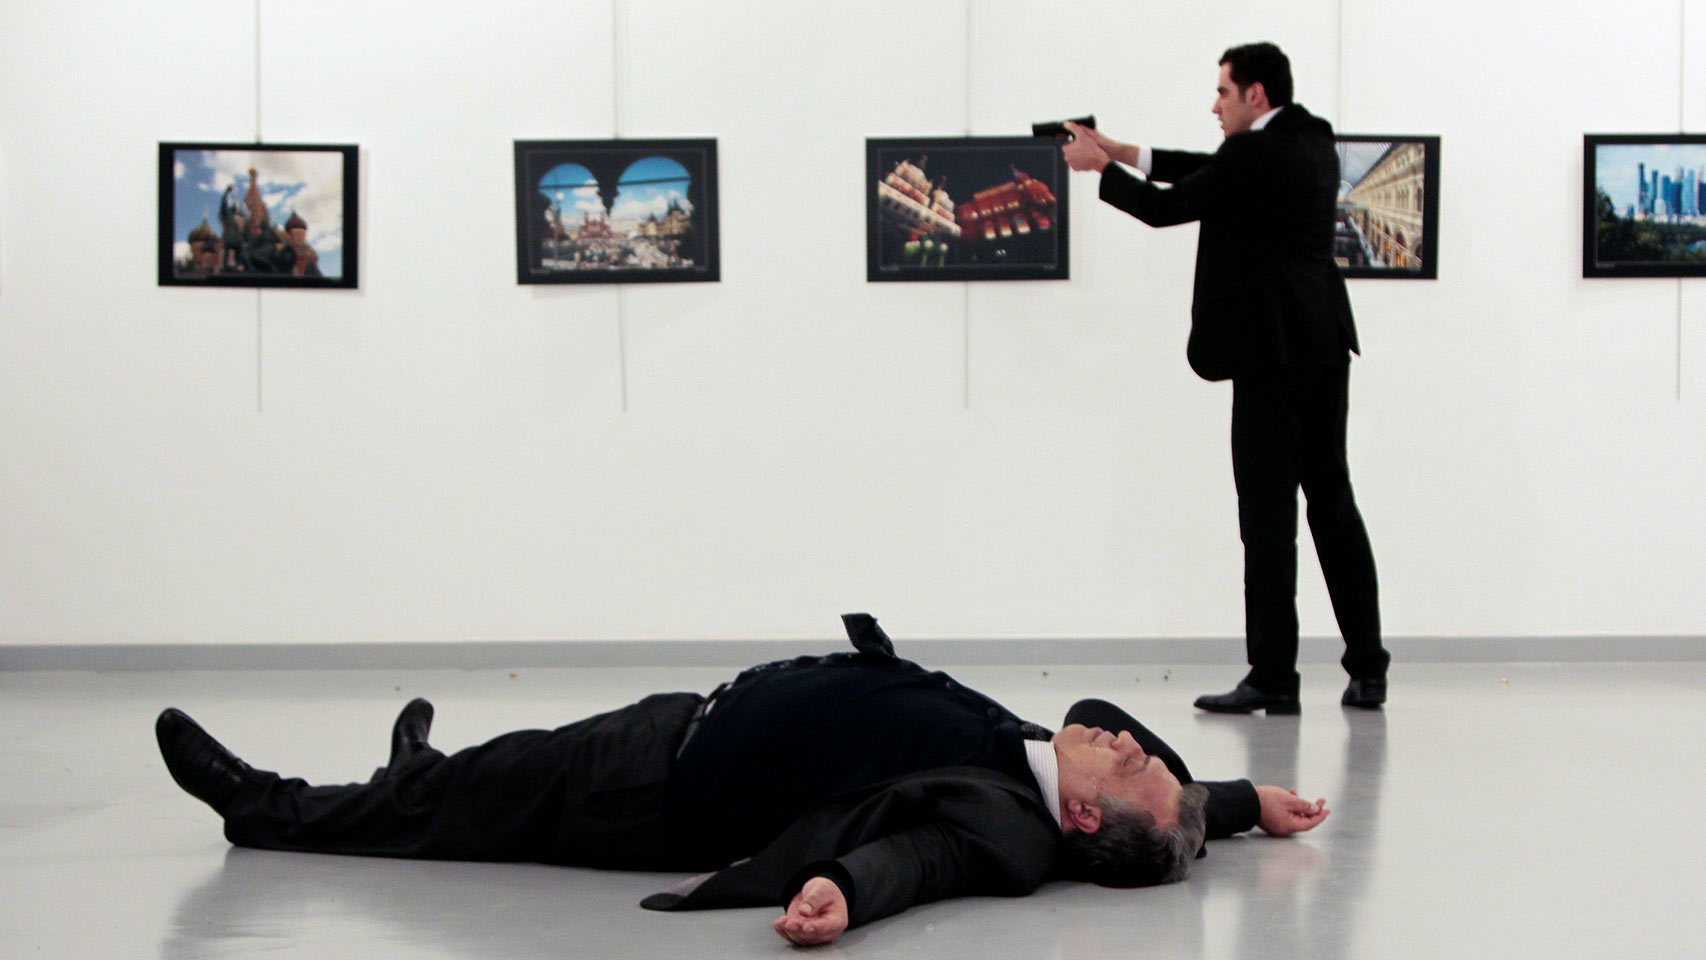 Resultado de imagen para embajador ruso muerto en turquia uno tv